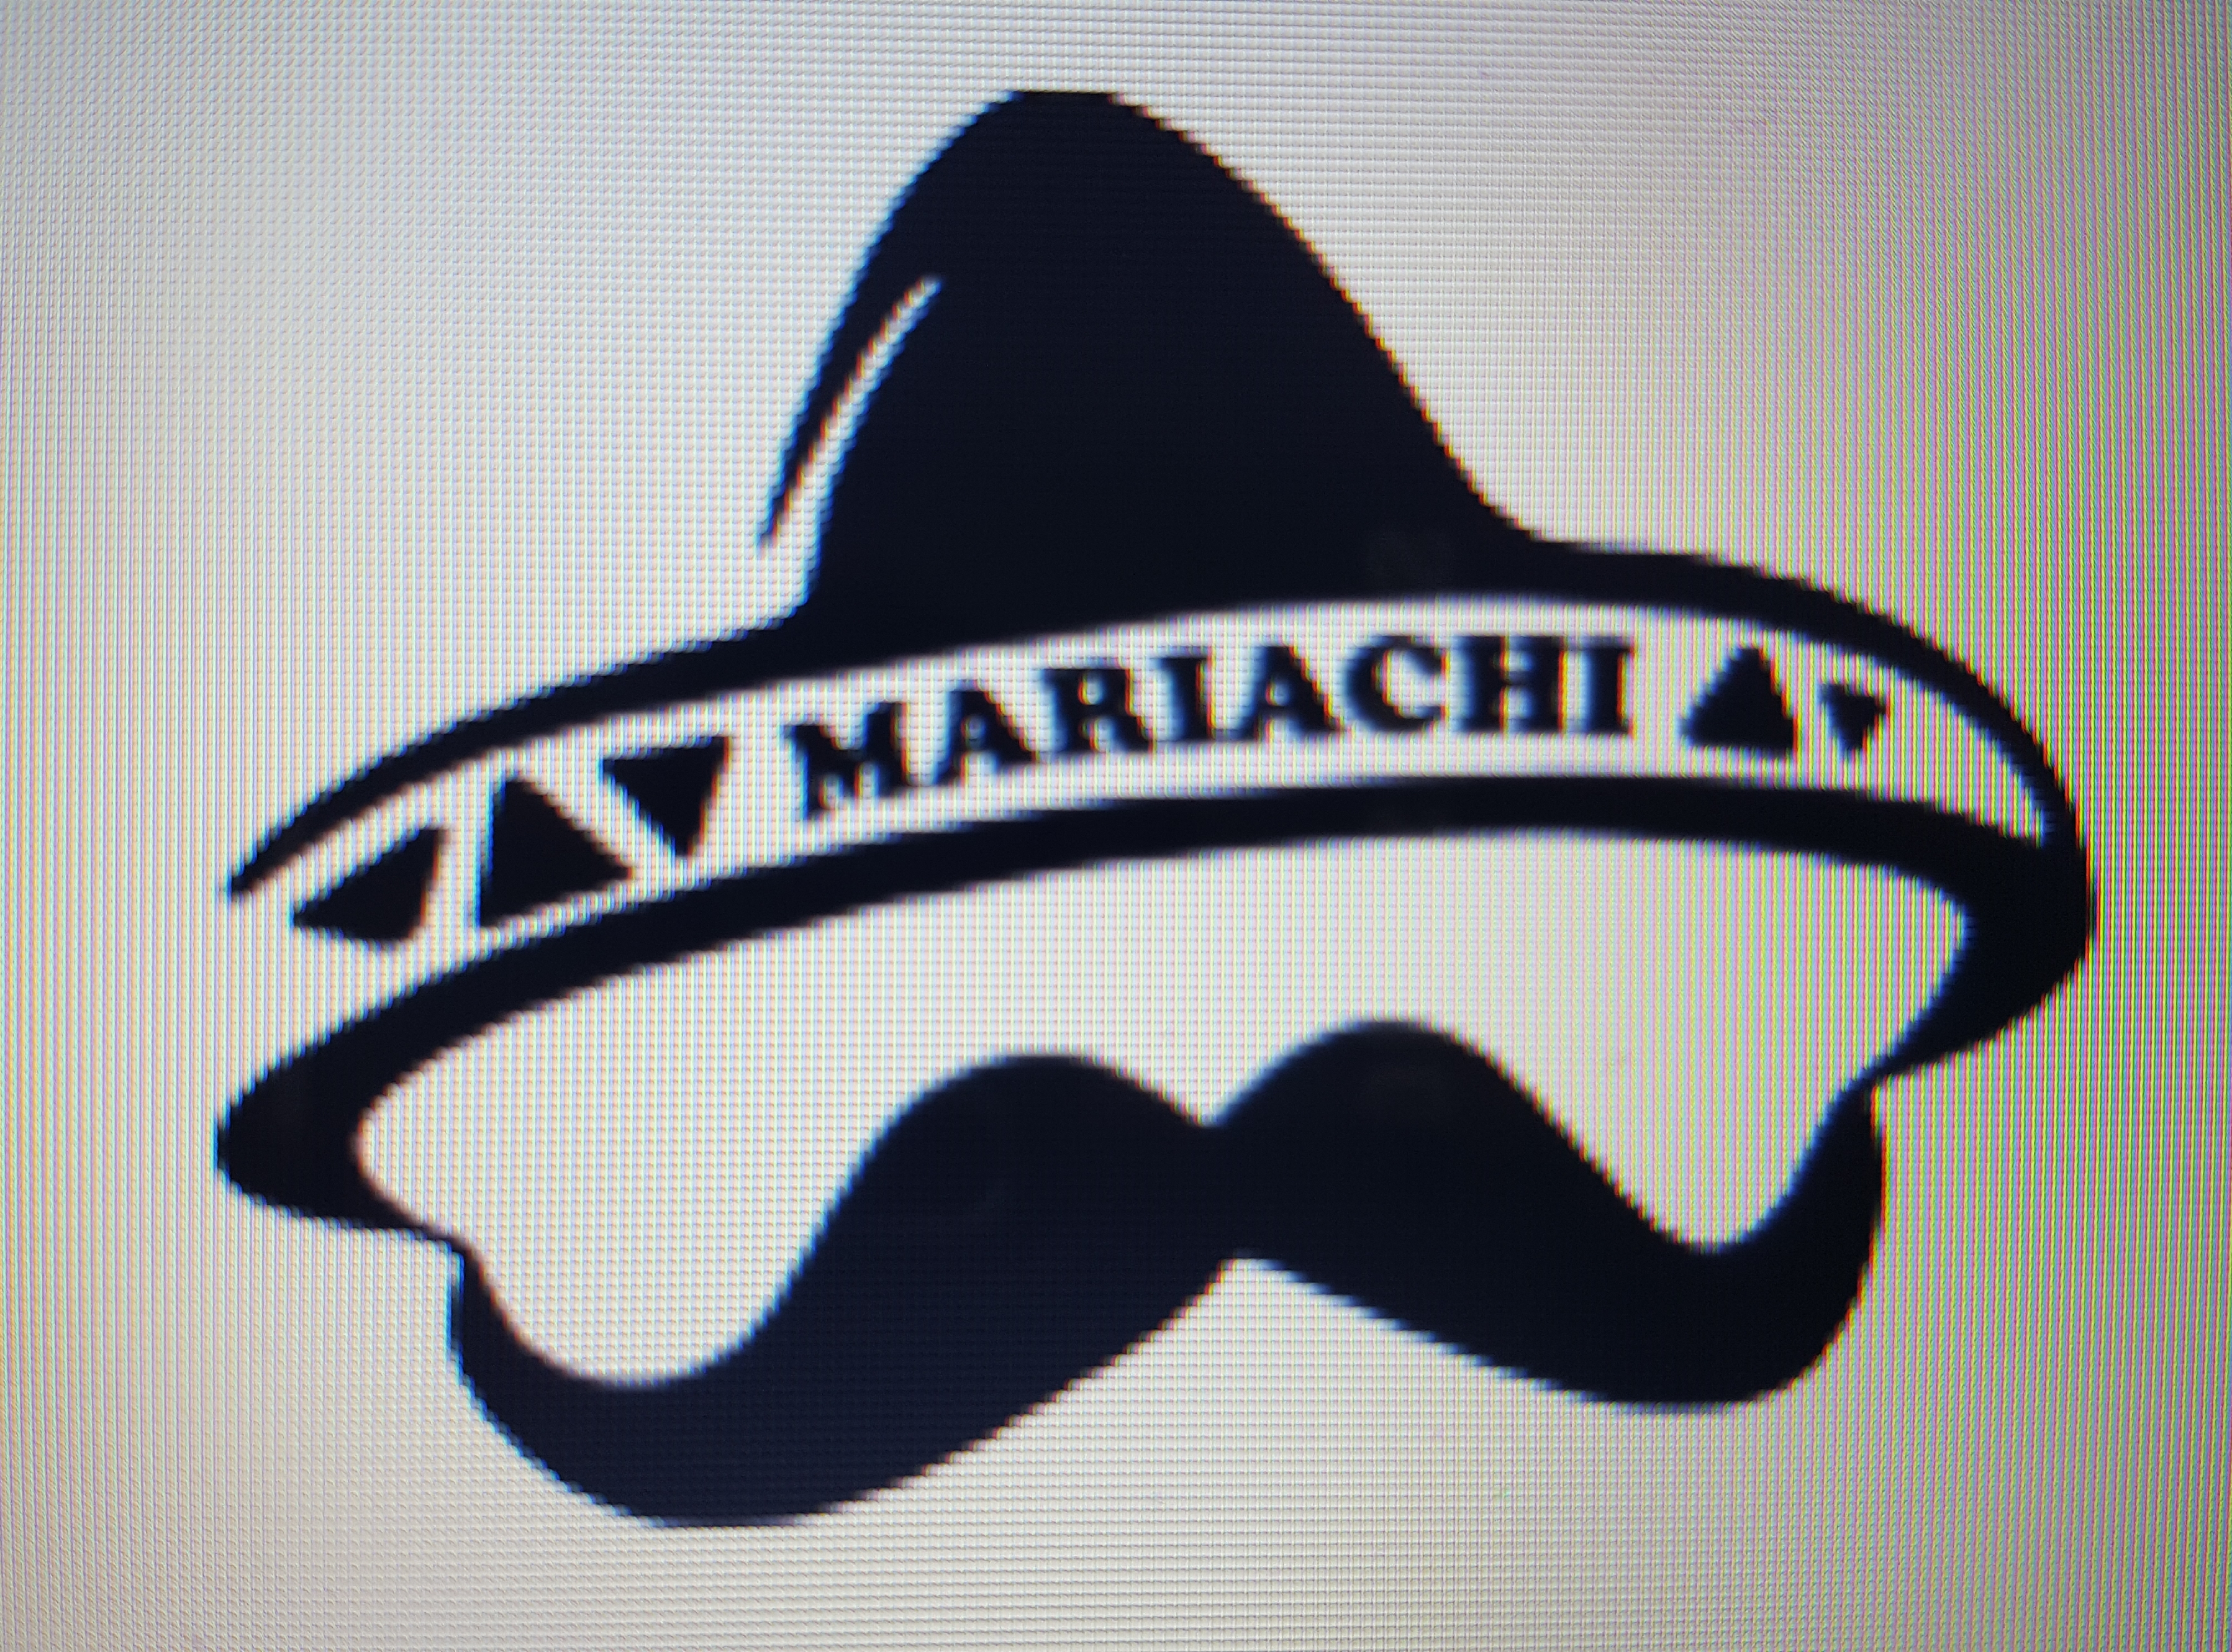 mariachi mezcal 